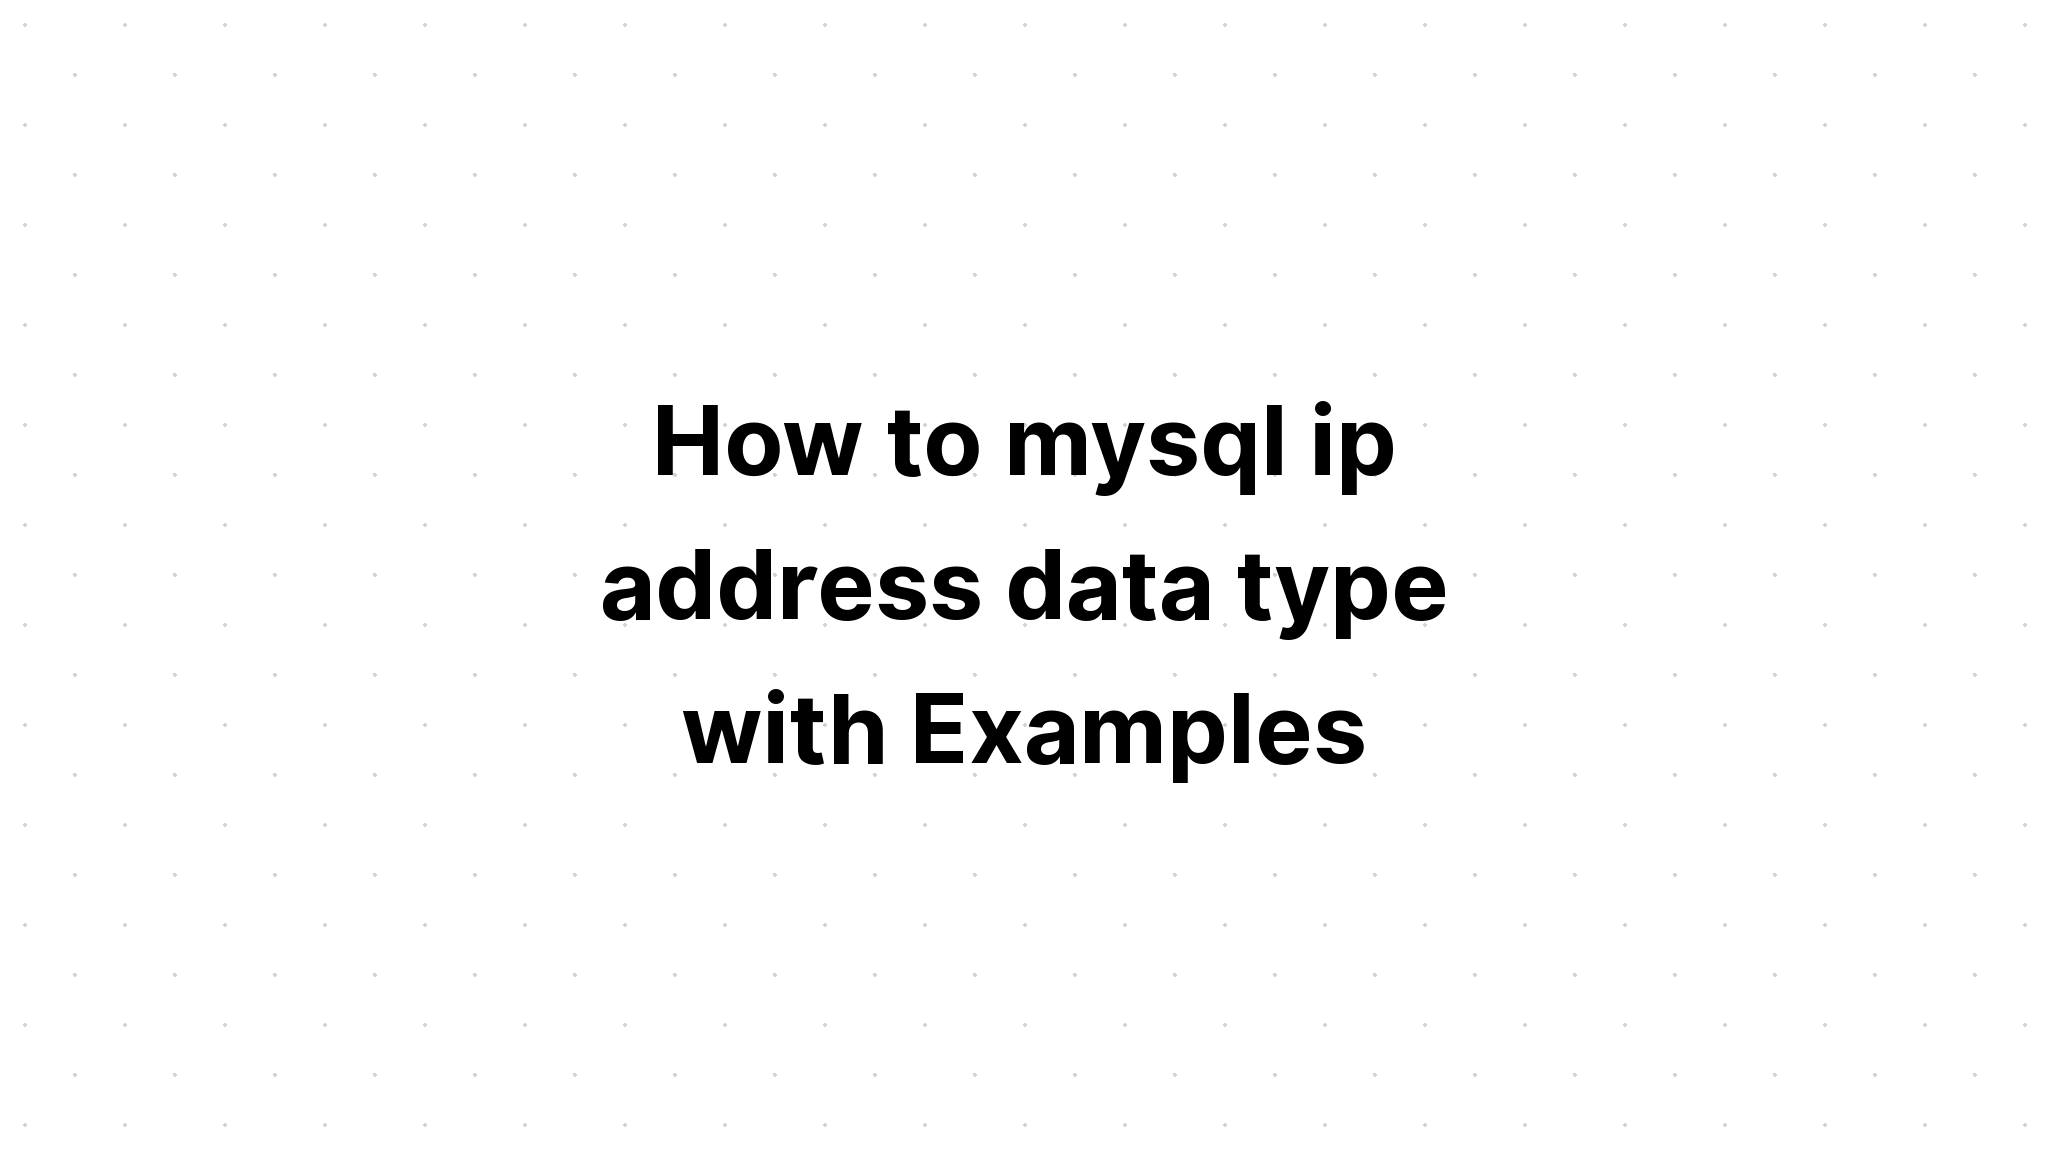 Cách nhập kiểu dữ liệu địa chỉ ip mysql với các ví dụ